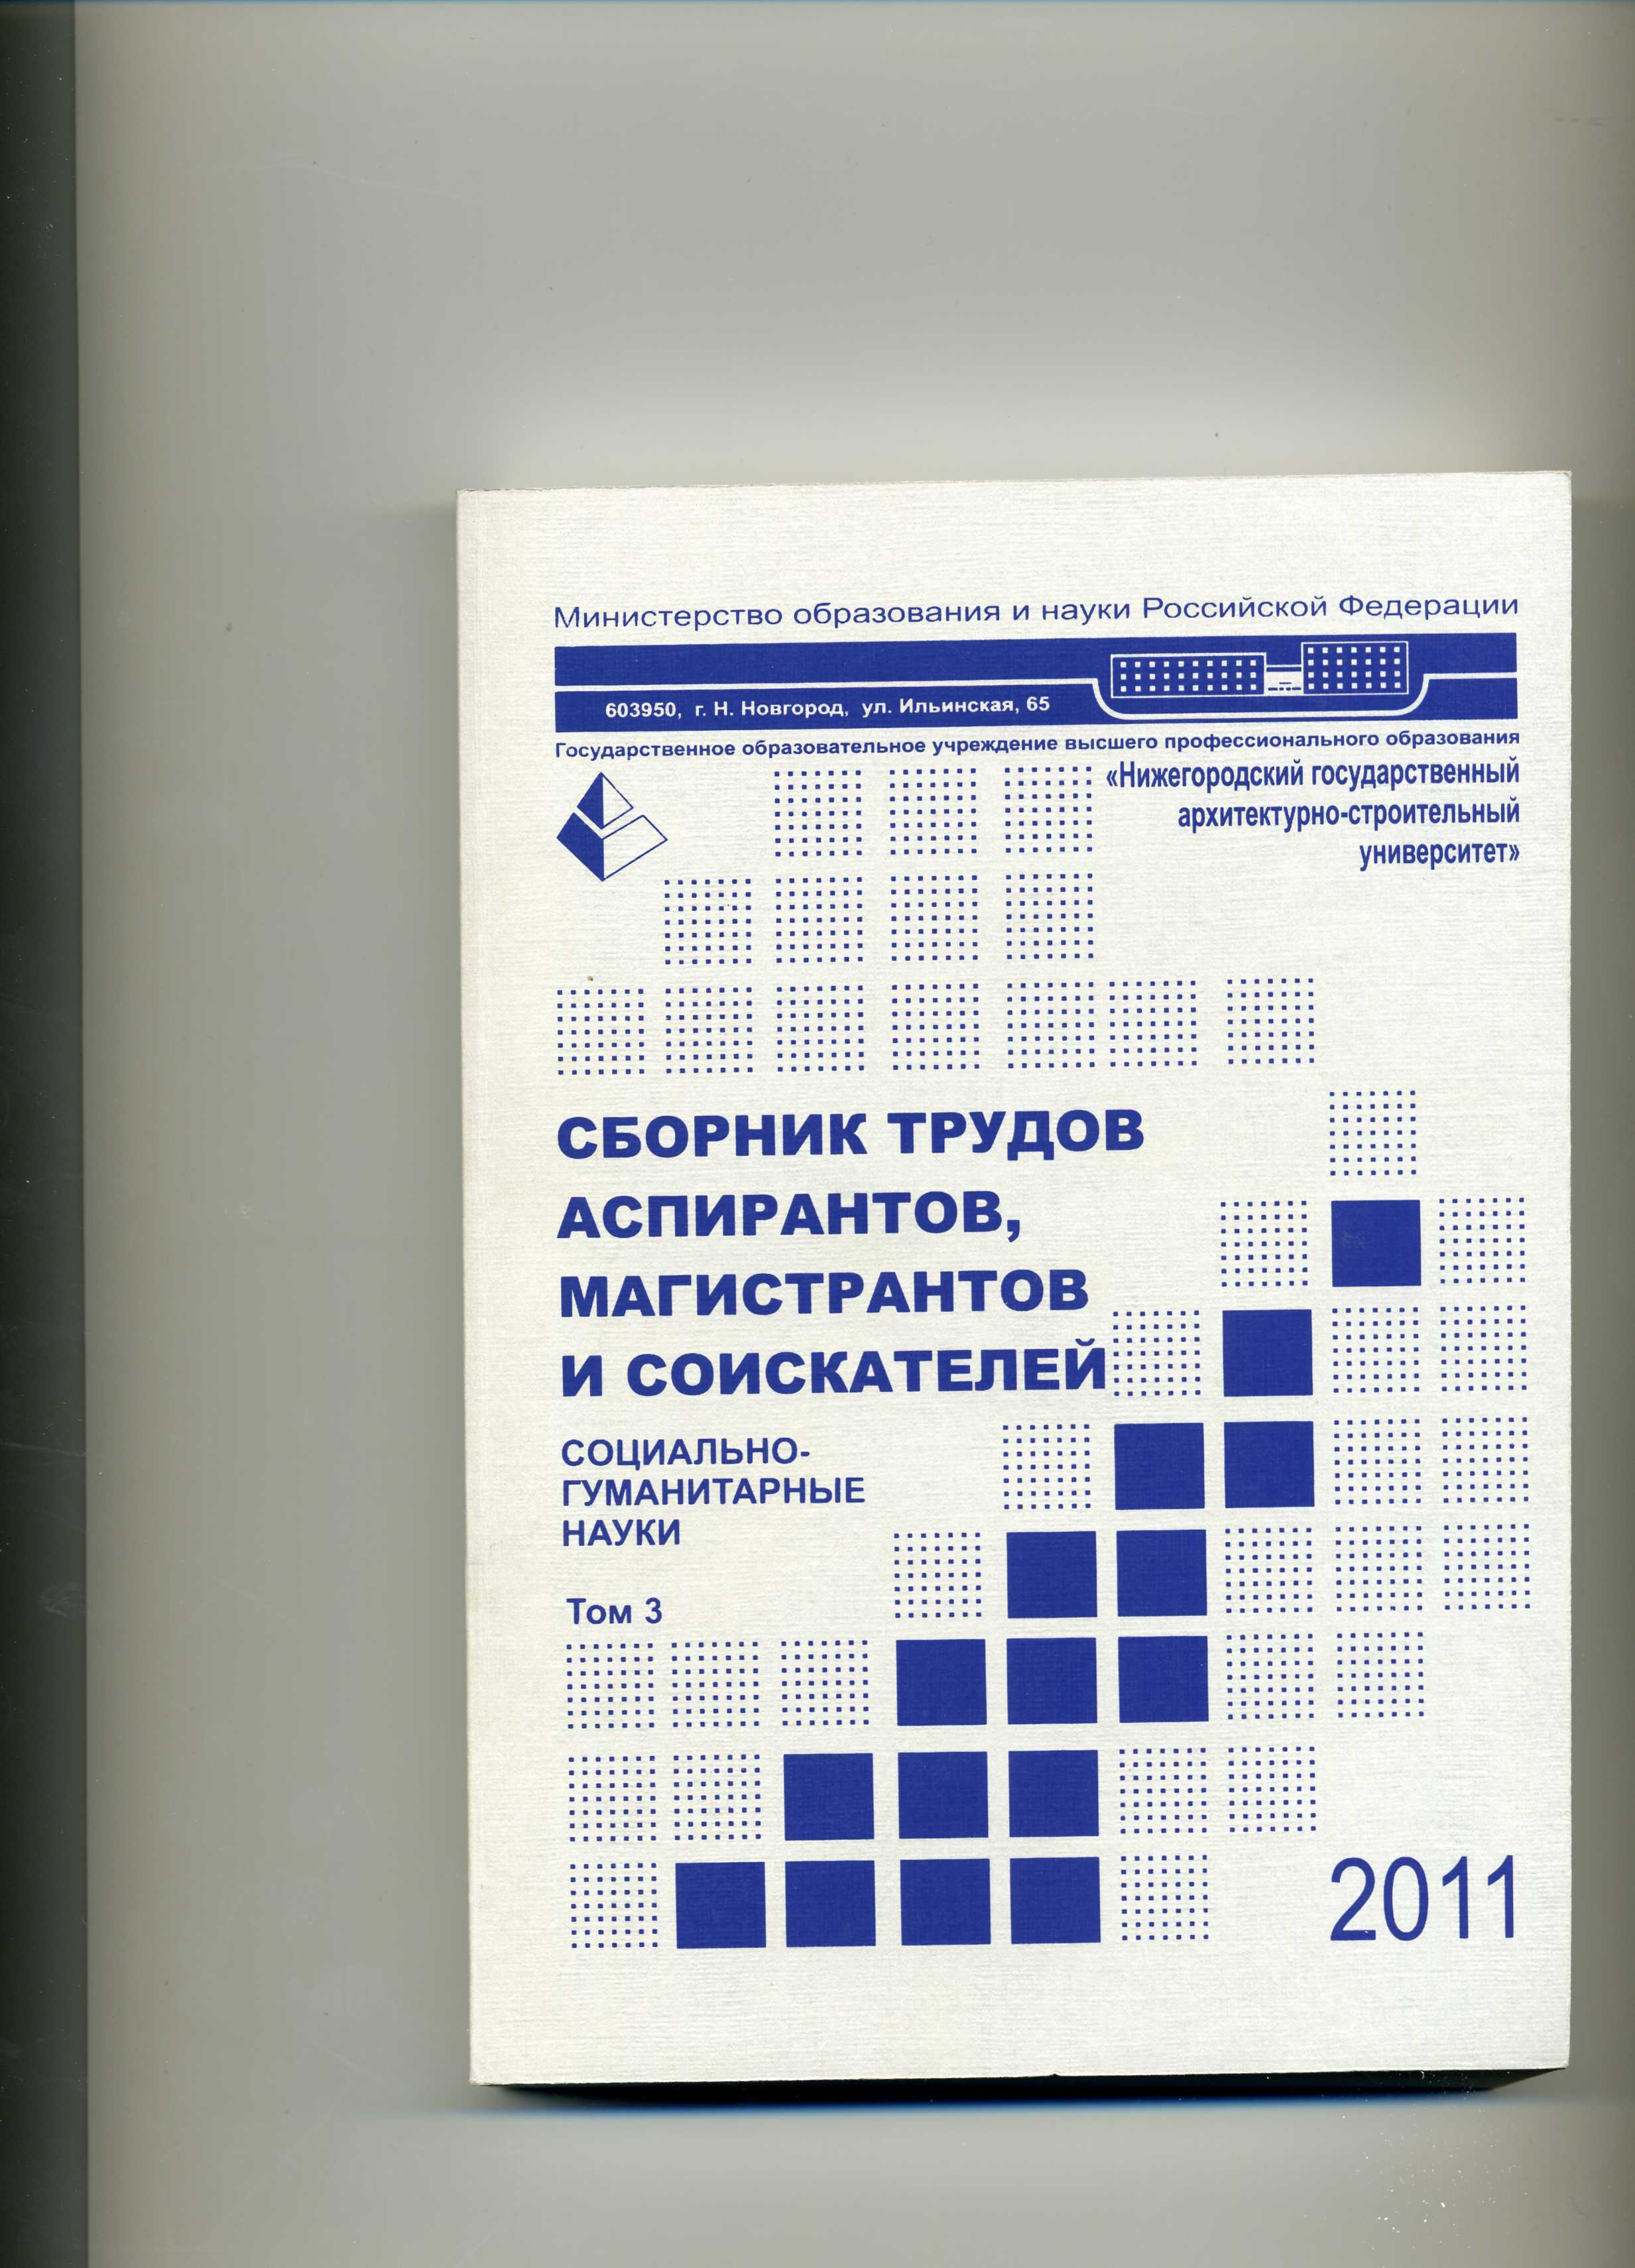 Сборник трудов аспирантов, магистрантов и соискателей. Социально-гуманитарные науки (2011)